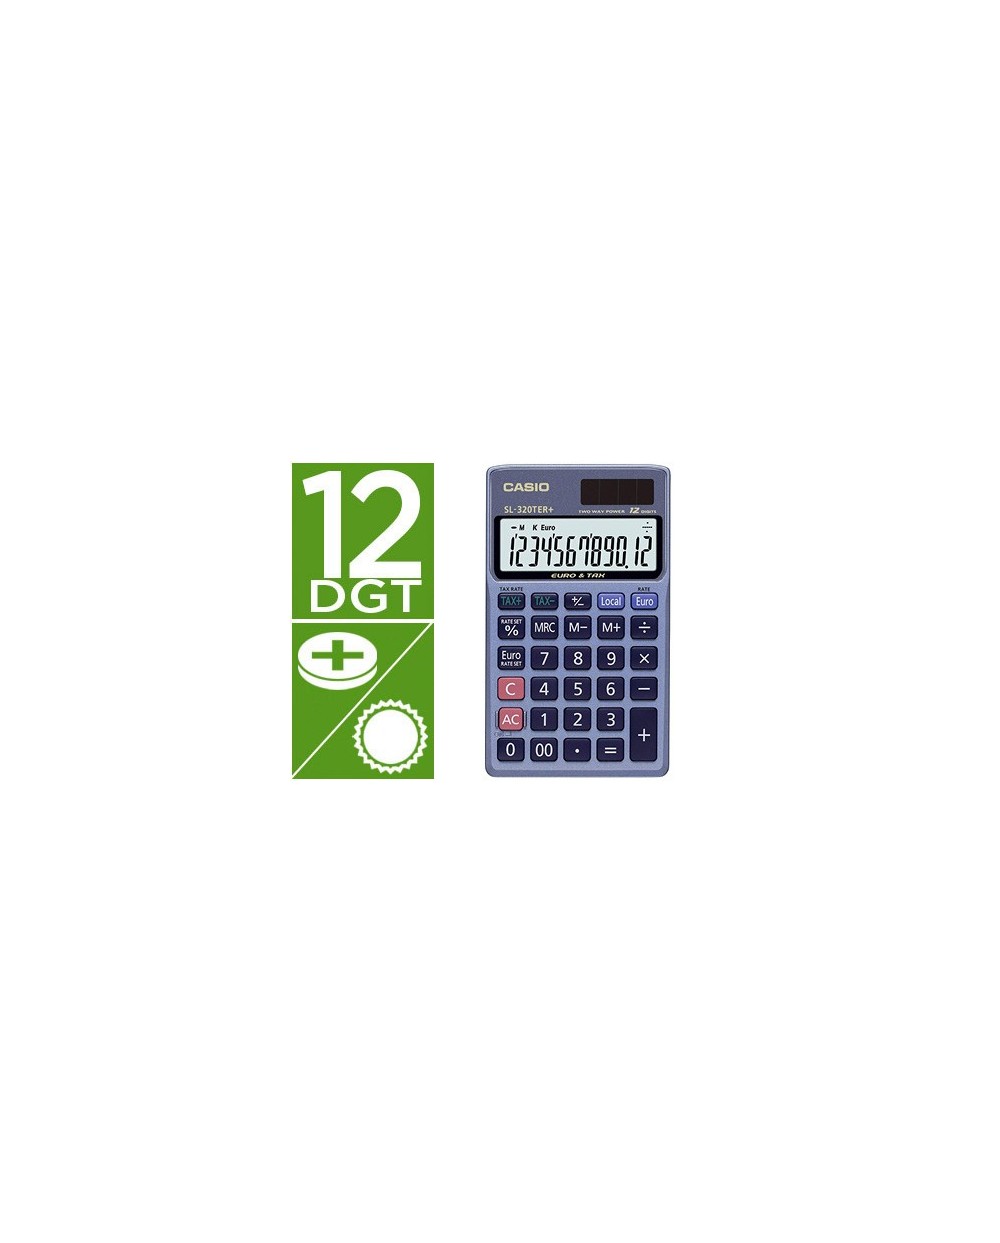 Calculadora casio sl 320ter bolsillo 12 digitos tax conversion moneda tecla doble cero color azul